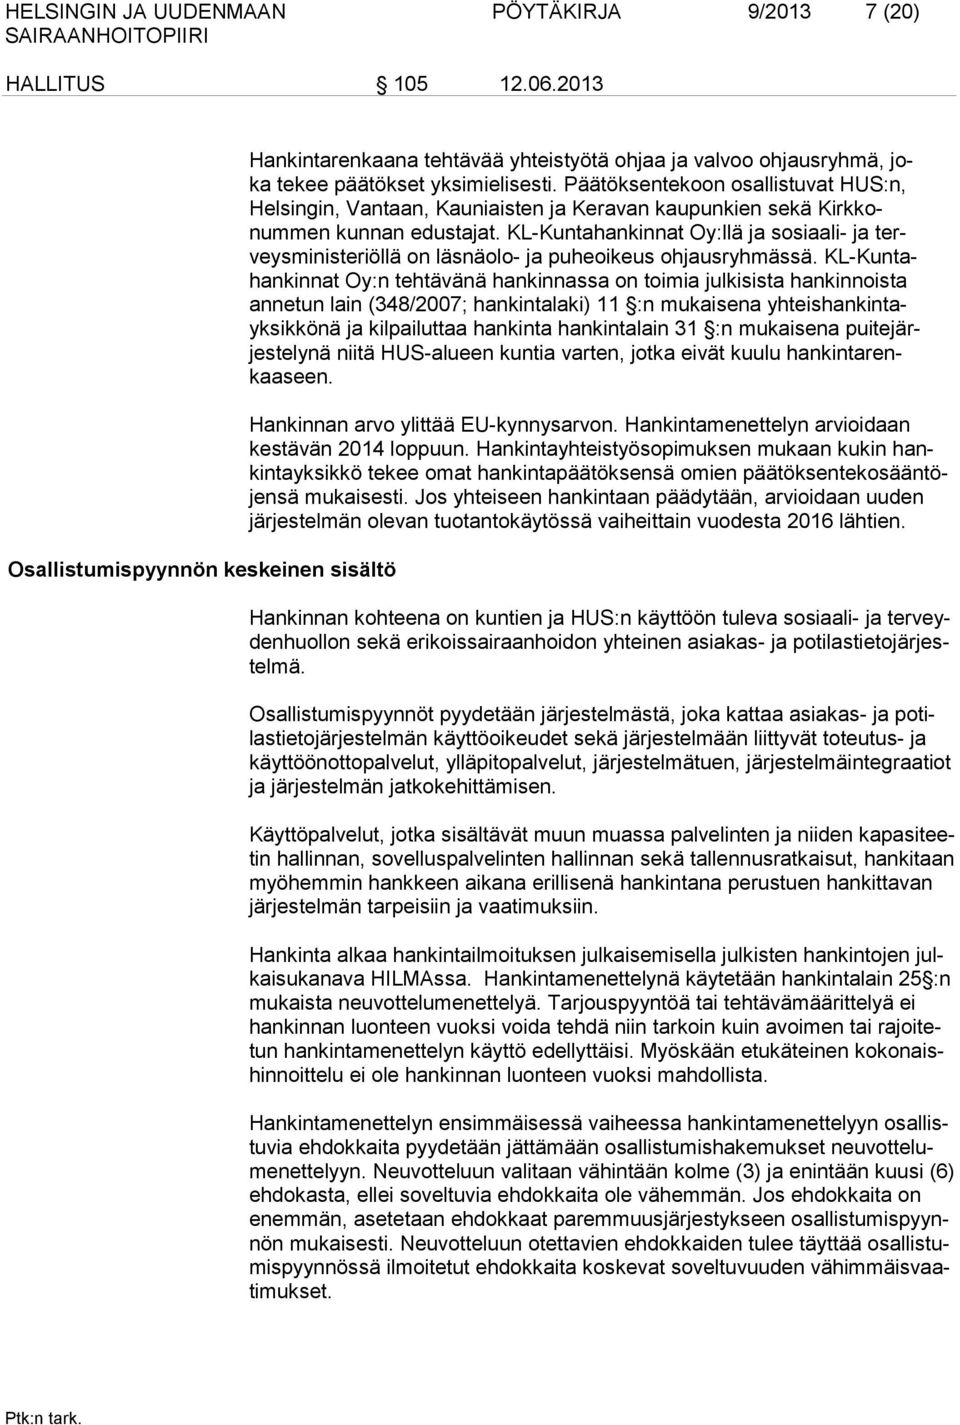 Päätöksentekoon osallistuvat HUS:n, Helsingin, Vantaan, Kauniaisten ja Keravan kaupunkien sekä Kirkkonummen kunnan edustajat.